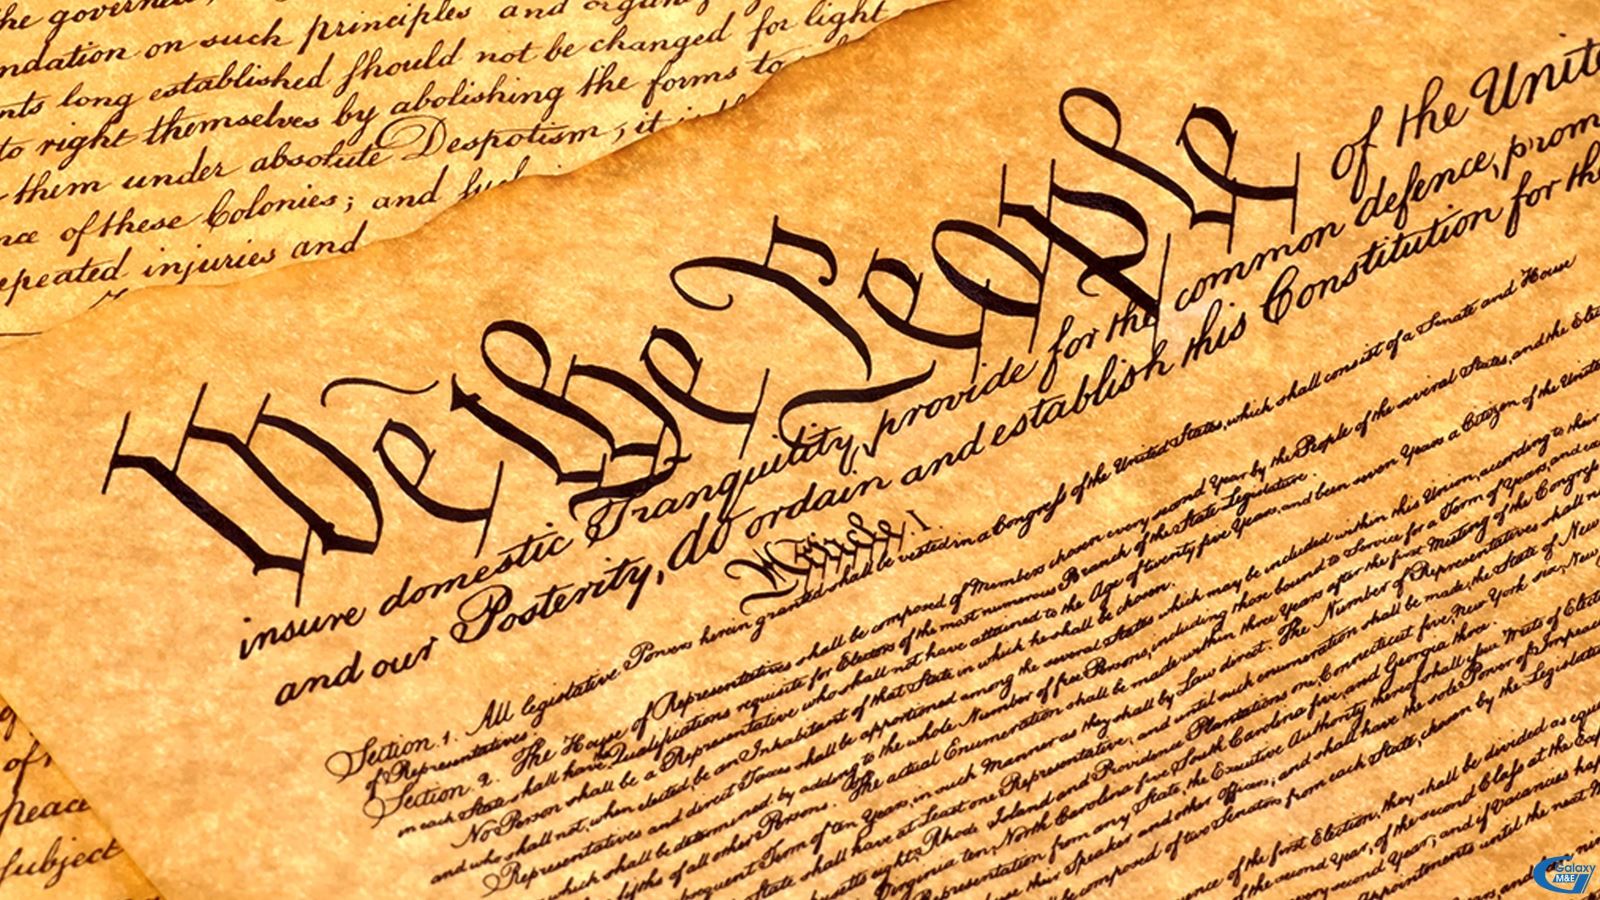 Hiến pháp Hoa Kỳ được soạn thảo ngày 17/9/1787. Đay là bộ luật tối cao của Hoa Kỳ. Nó dựa trên tư tưởng tam quyền phân lập giữa nhánh lập pháp (Quốc hội), hành pháp (Tổng thống) và tư pháp (Tòa án) do Montesquieu, triết gia người Pháp đề xướng. Bản Hiến pháp được phê chuẩn sau các cuộc hội nghị tại 13 tiểu bang đầu tiên. Cùng với Tuyên ngôn Độc lập viết năm 1776, bản Hiến pháp này đã thể hiện tinh thần khoa học, tiến bộ và nhân bản của người Mỹ trong việc xây dựng nhà nước cộng hòa đầu tiên trên thế giới. Nó đã tạo ra một chính quyền thống nhất và tập trung hơn chính quyền dưới những Điều khoản Liên hiệp.